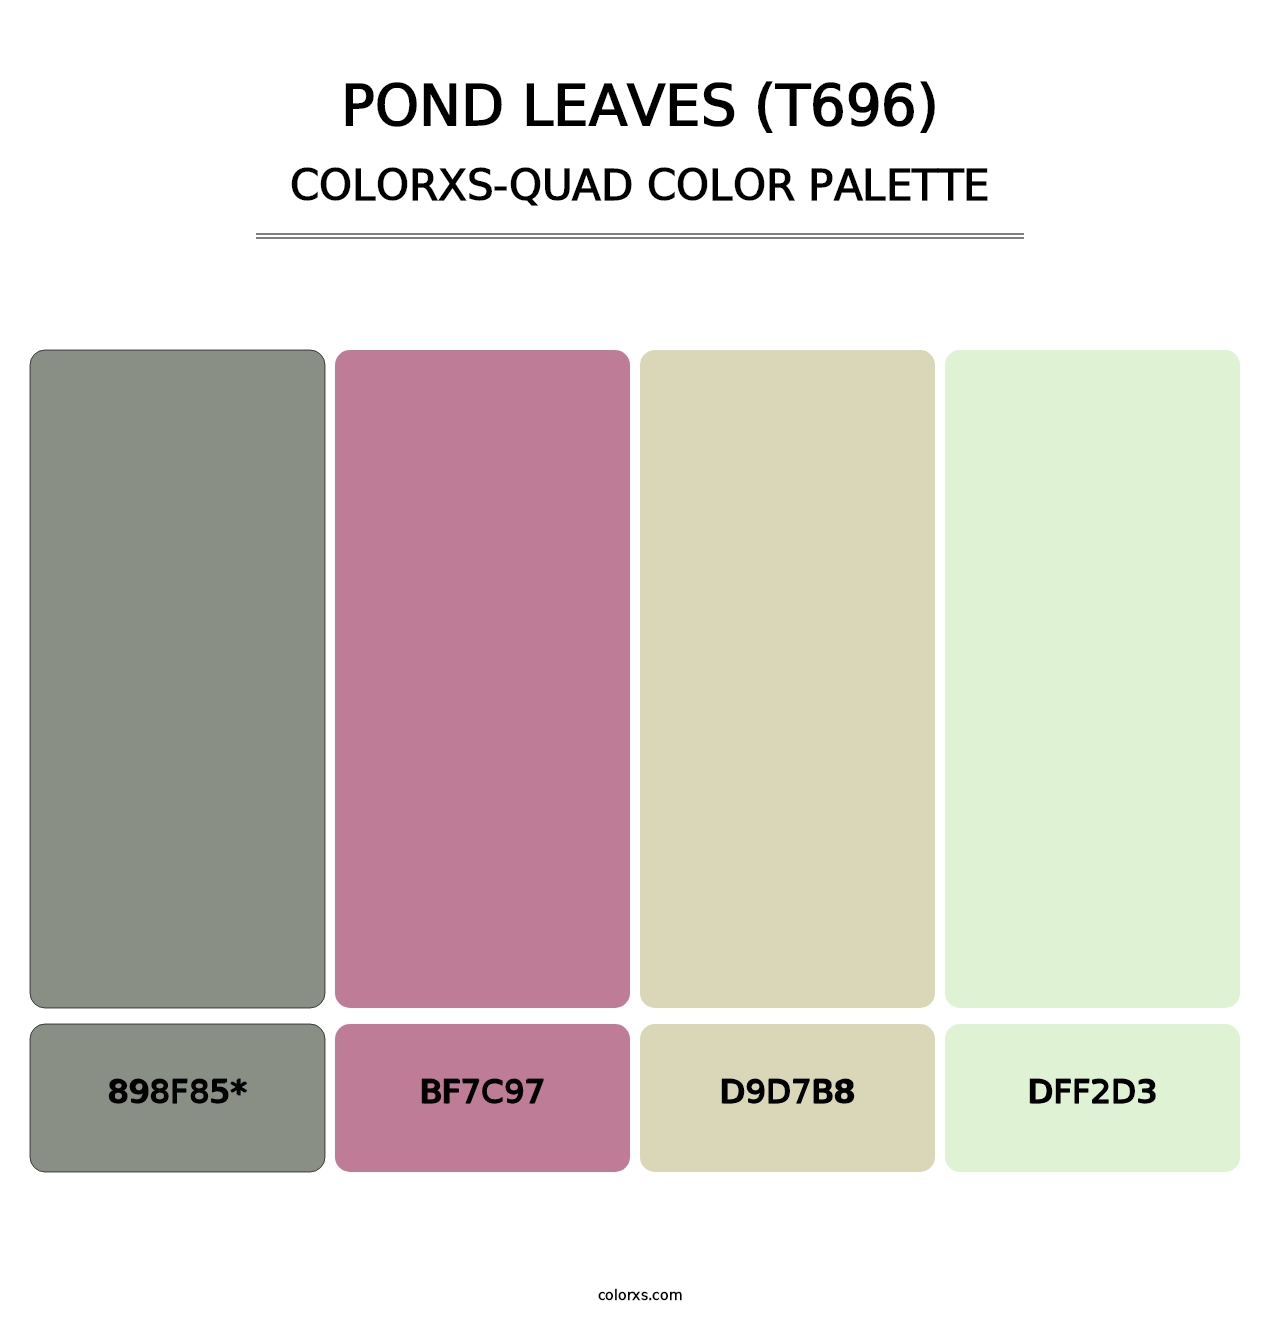 Pond Leaves (T696) - Colorxs Quad Palette